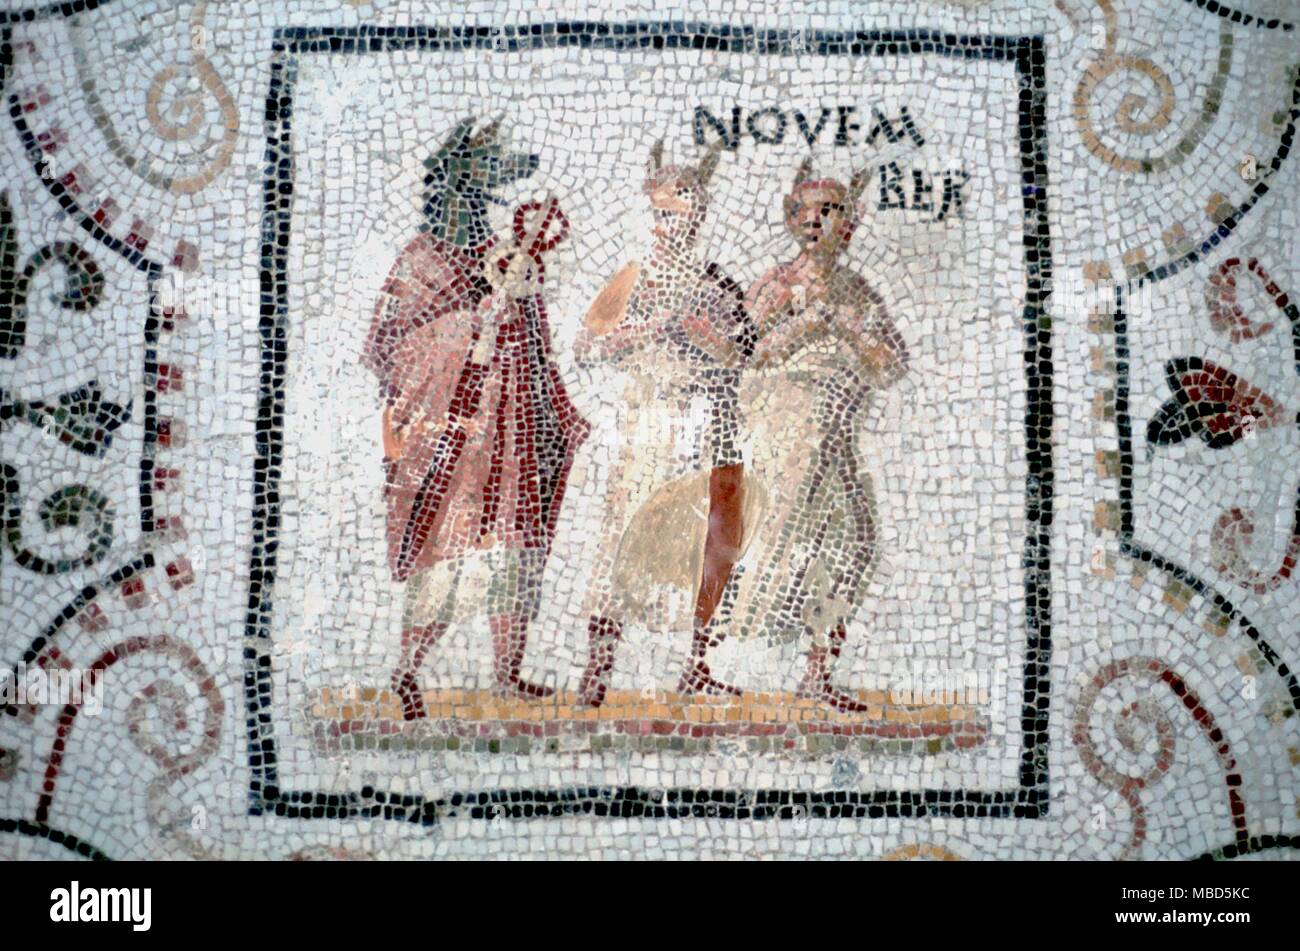 Saisons - Novembre. Détail de mercure à tête de chien comme symbole de novembre. Mosaïque de l'époque romaine (3e siècle de notre ère), anciennement à Thrysdus, maintenant dans le Musée de Sousse, Tunisie. Banque D'Images